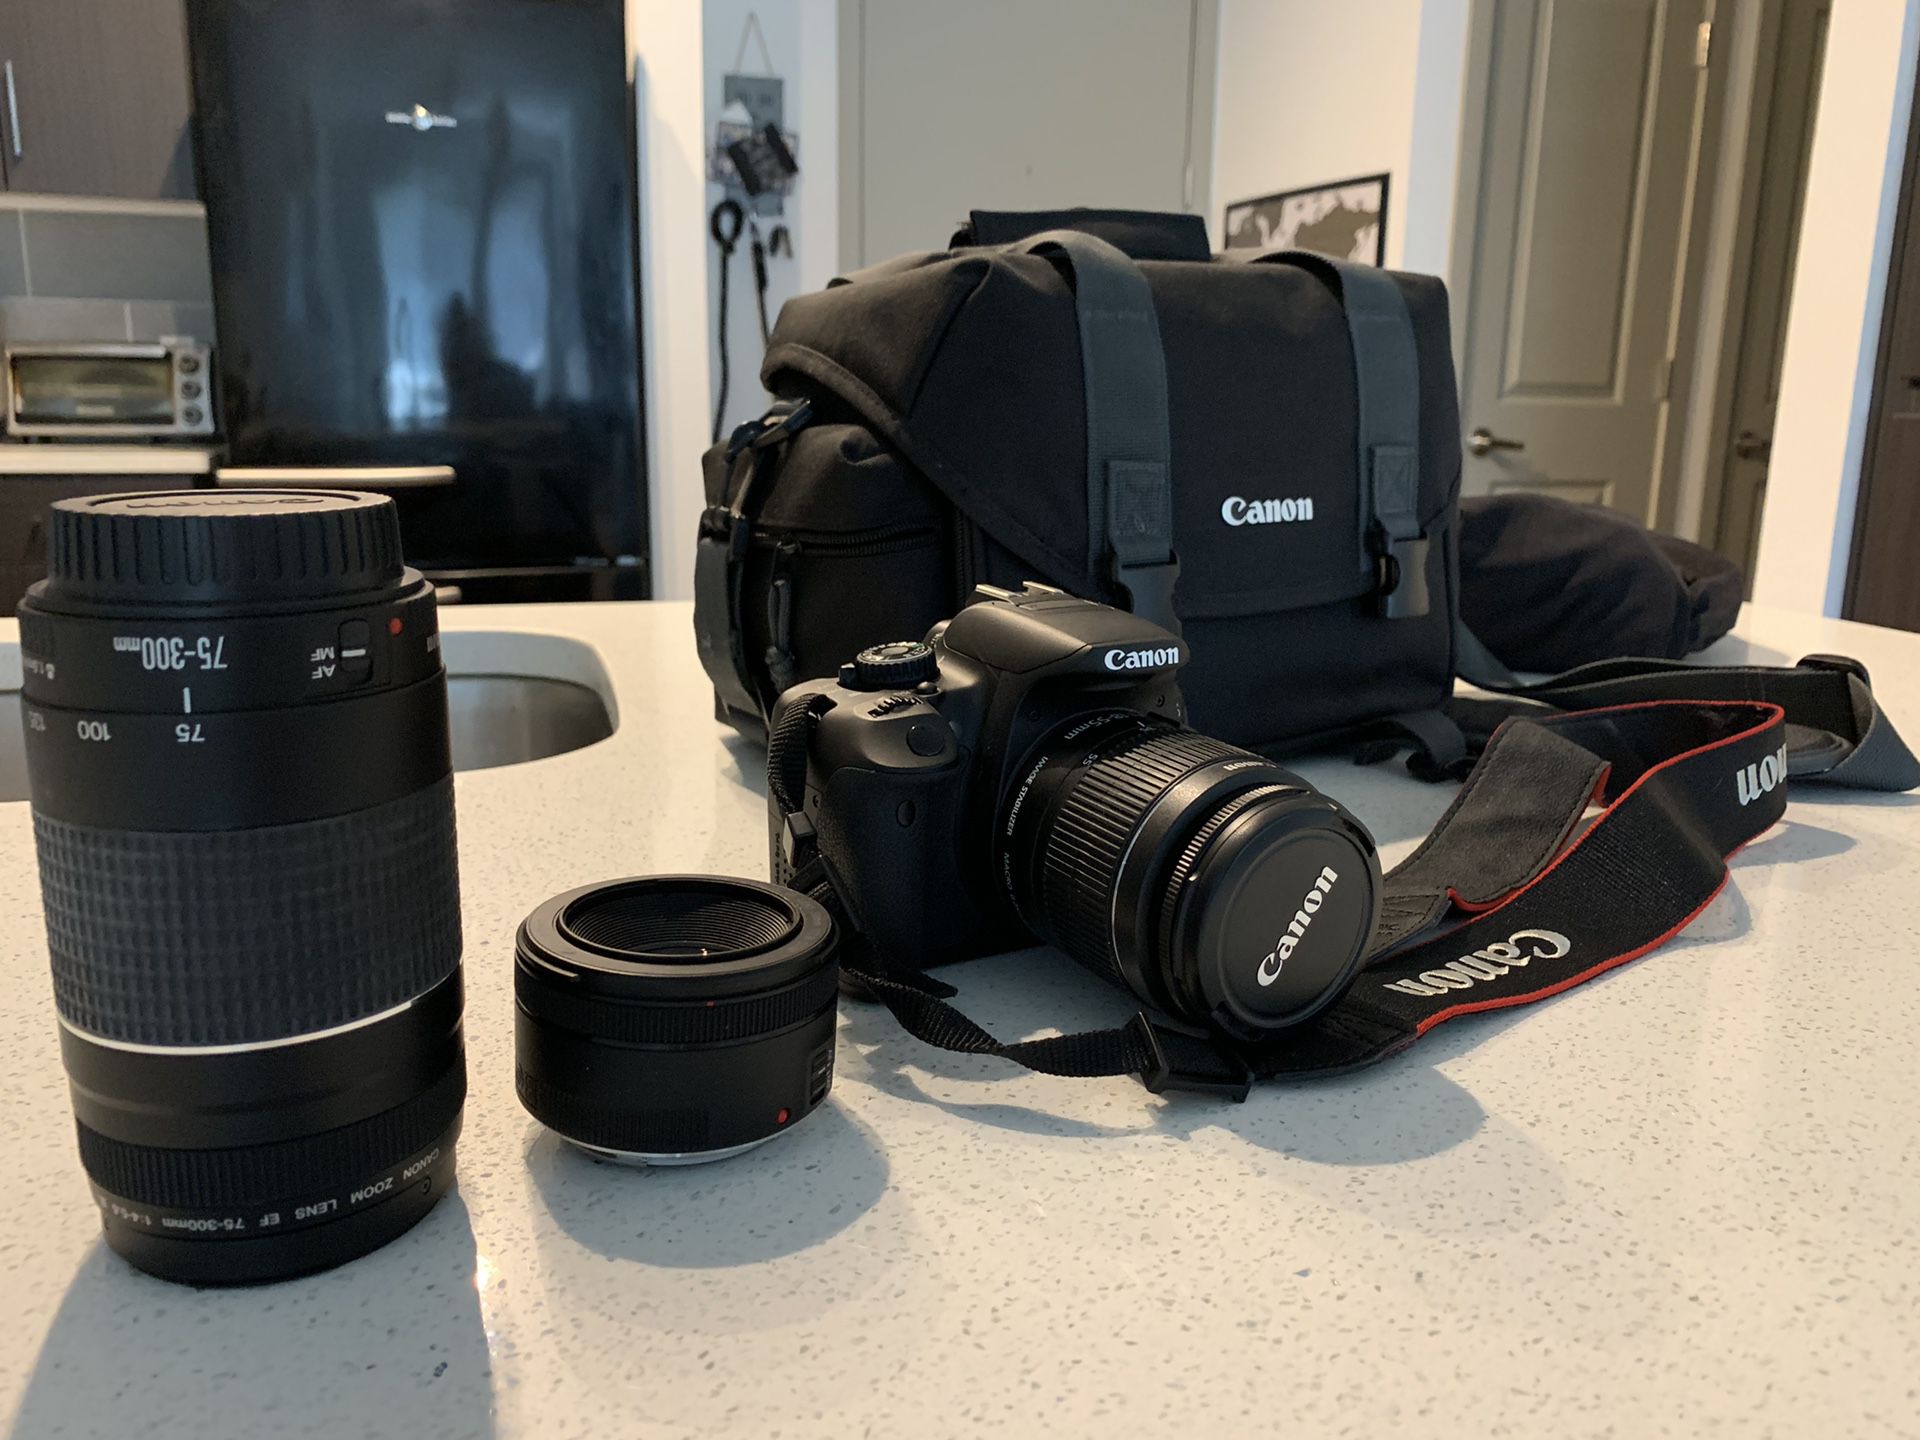 Canon EOS Rebel t4i DSLR Digital Camera / Includes 3 lenses and camera bag